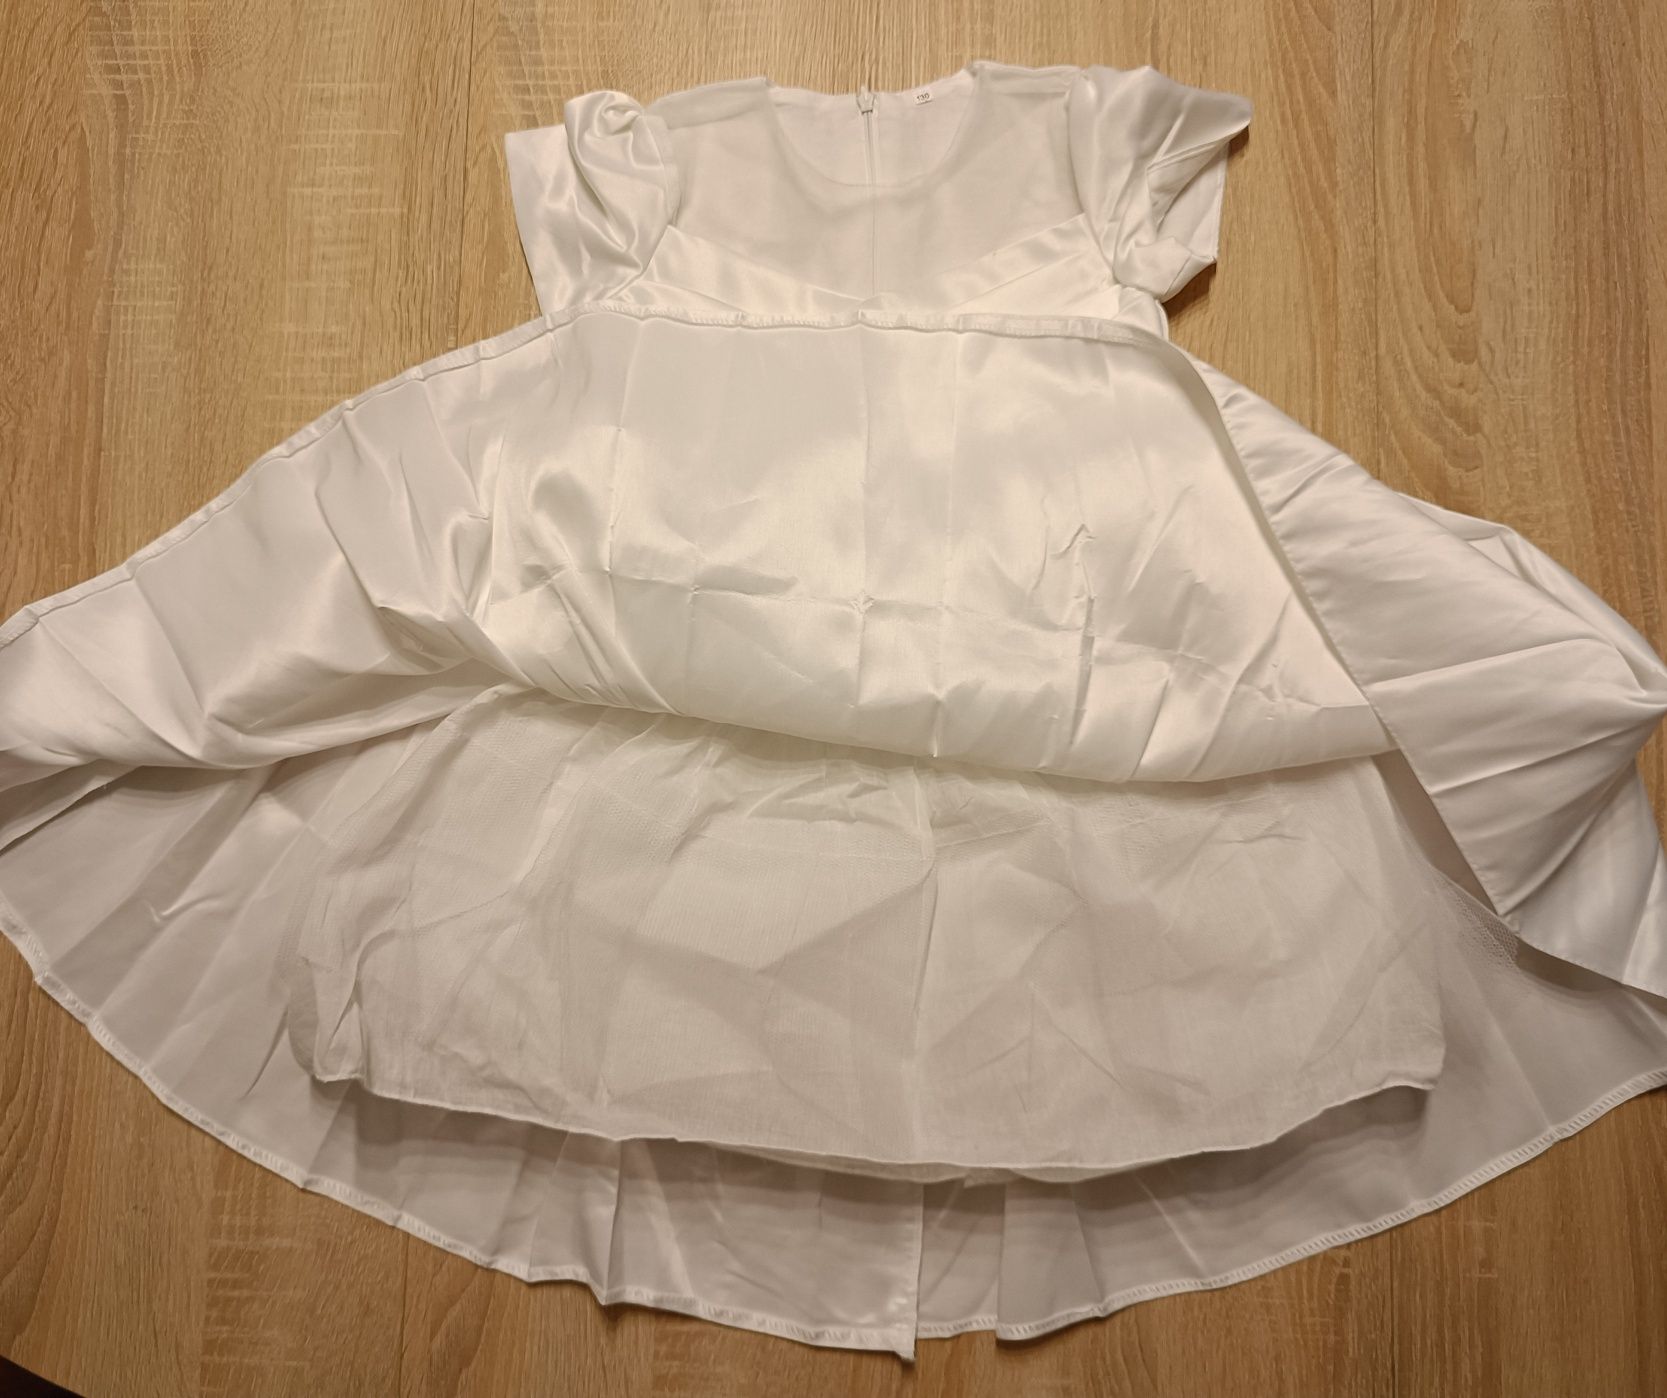 Biała sukienka 130cm, satynowa, rozkloszowana, komunia chrzciny wesele